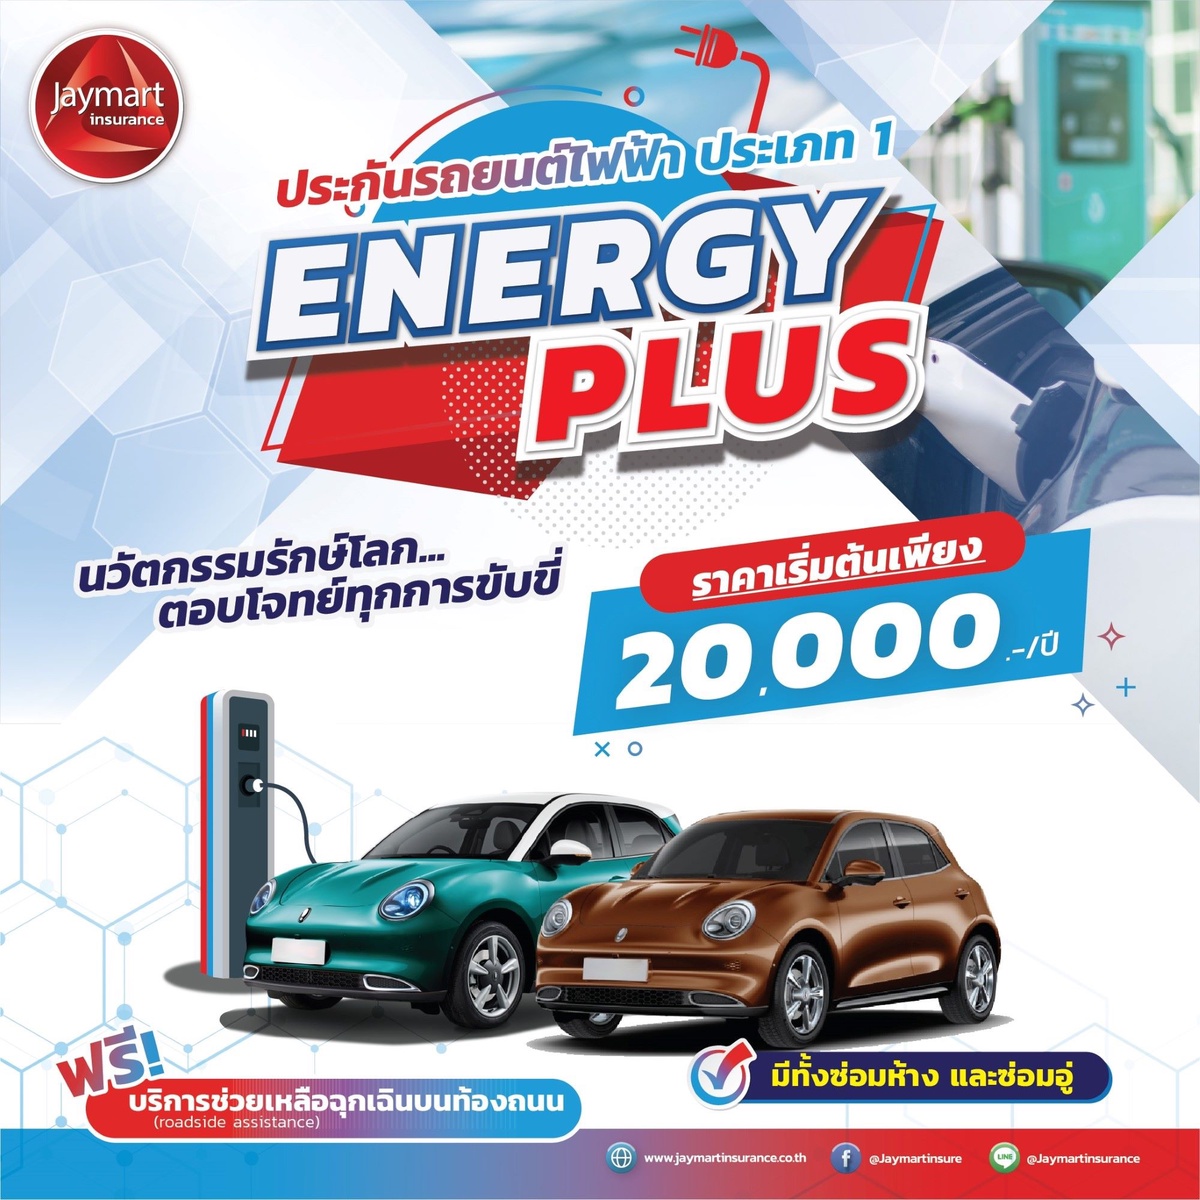 เจมาร์ท ประกันภัย เปิดตัวประกันรถยนต์ไฟฟ้า Energy Plus รับเทรนด์ผู้บริโภคยุคใหม่ ค่าเบี้ยเริ่มต้น 20,000 บาท/ปี